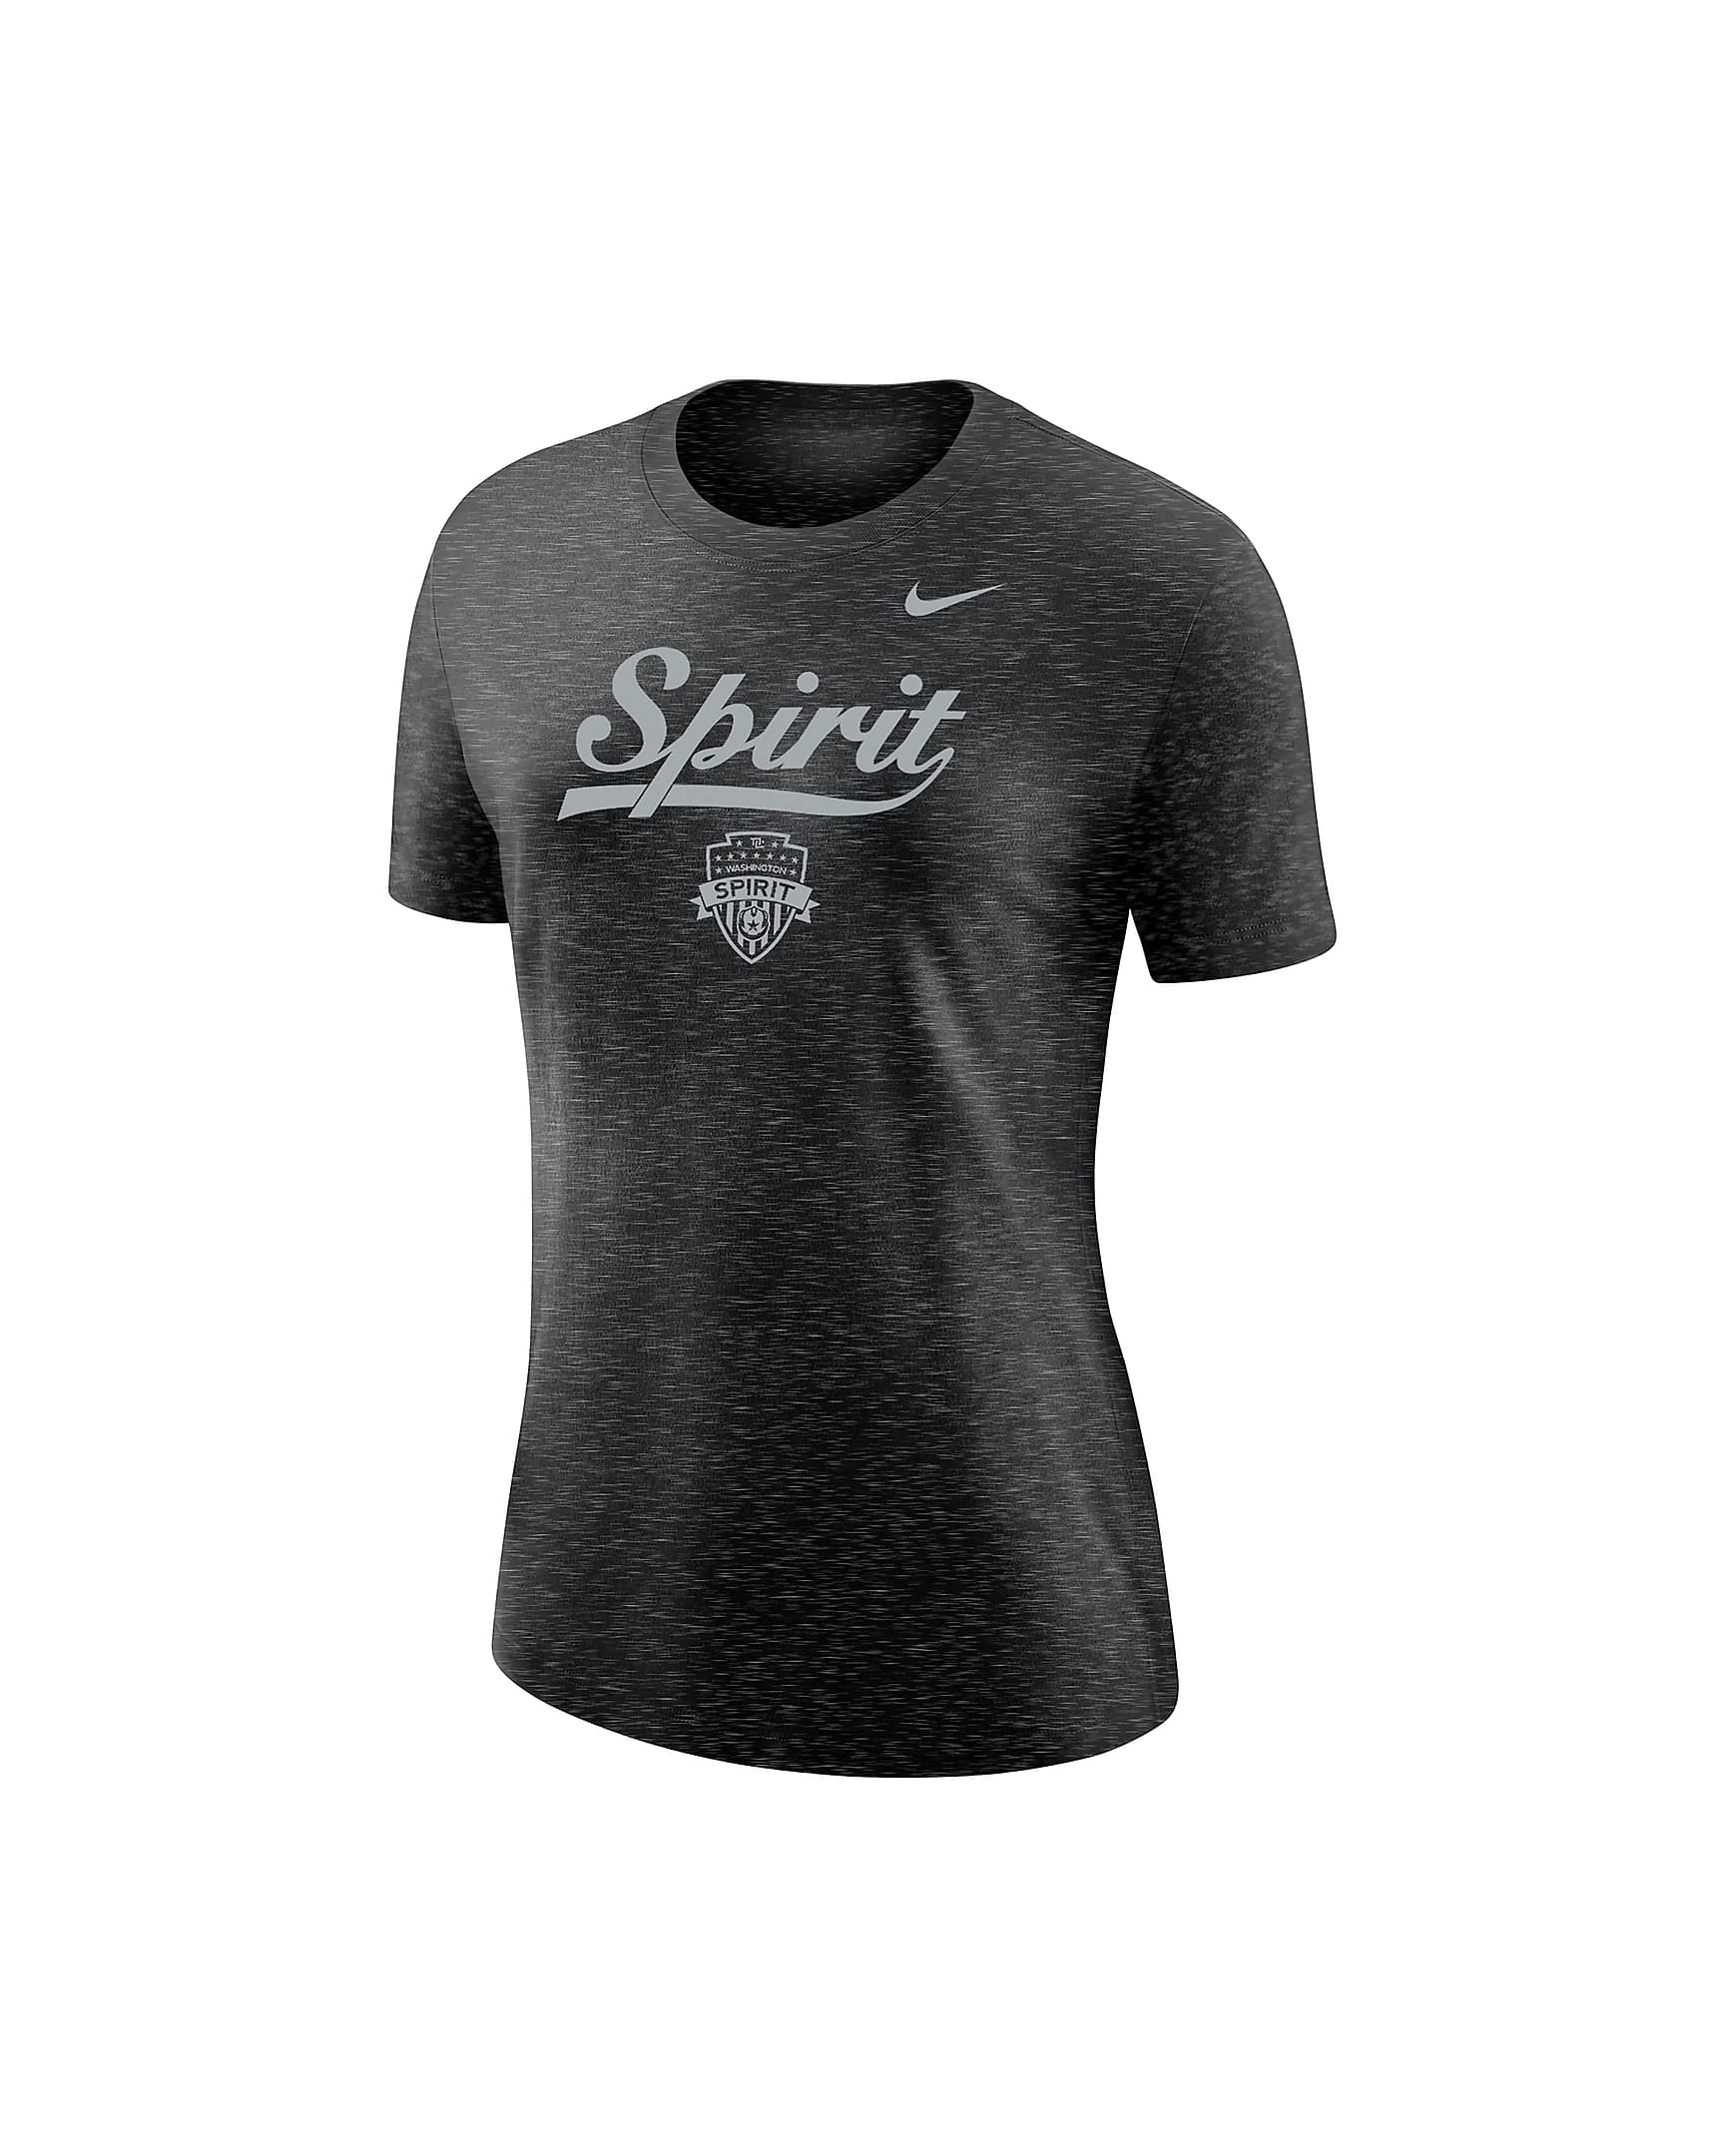 Washington Spirit Women's Nike Soccer Varsity T-Shirt. Nike.com